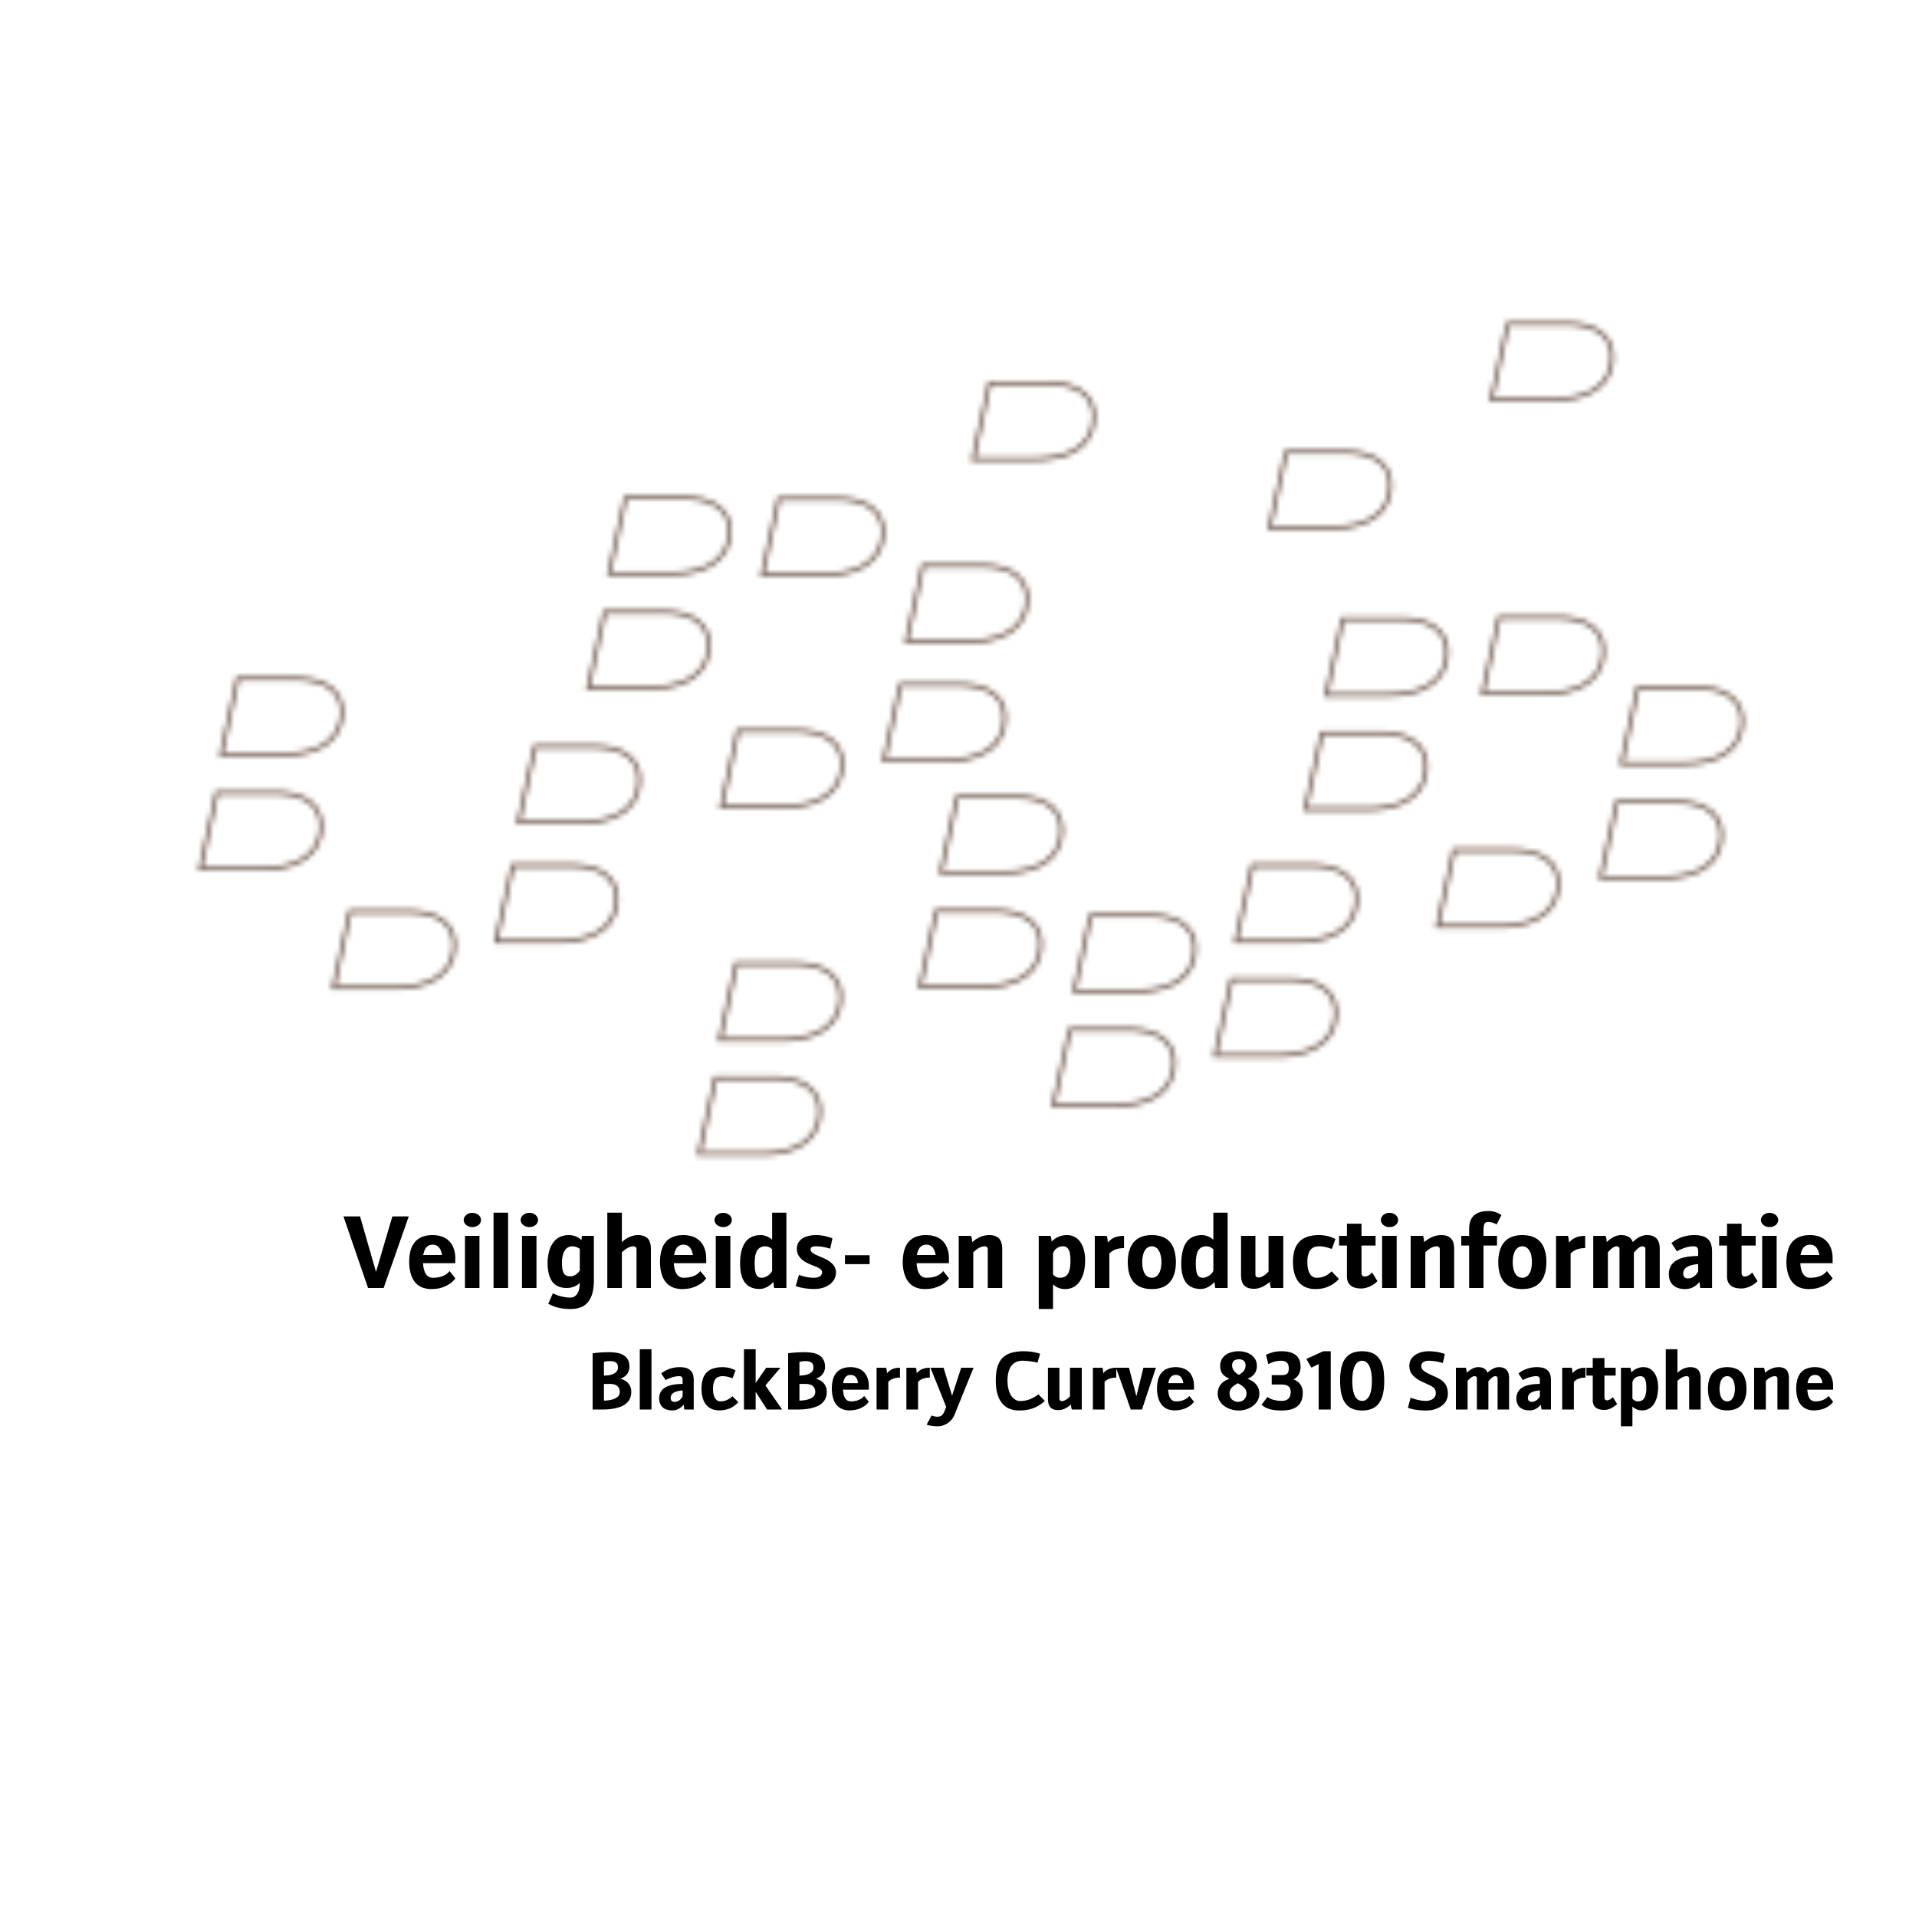 Veiligheids- en productinformatie
BlackBerry Curve 8310 Smartphone